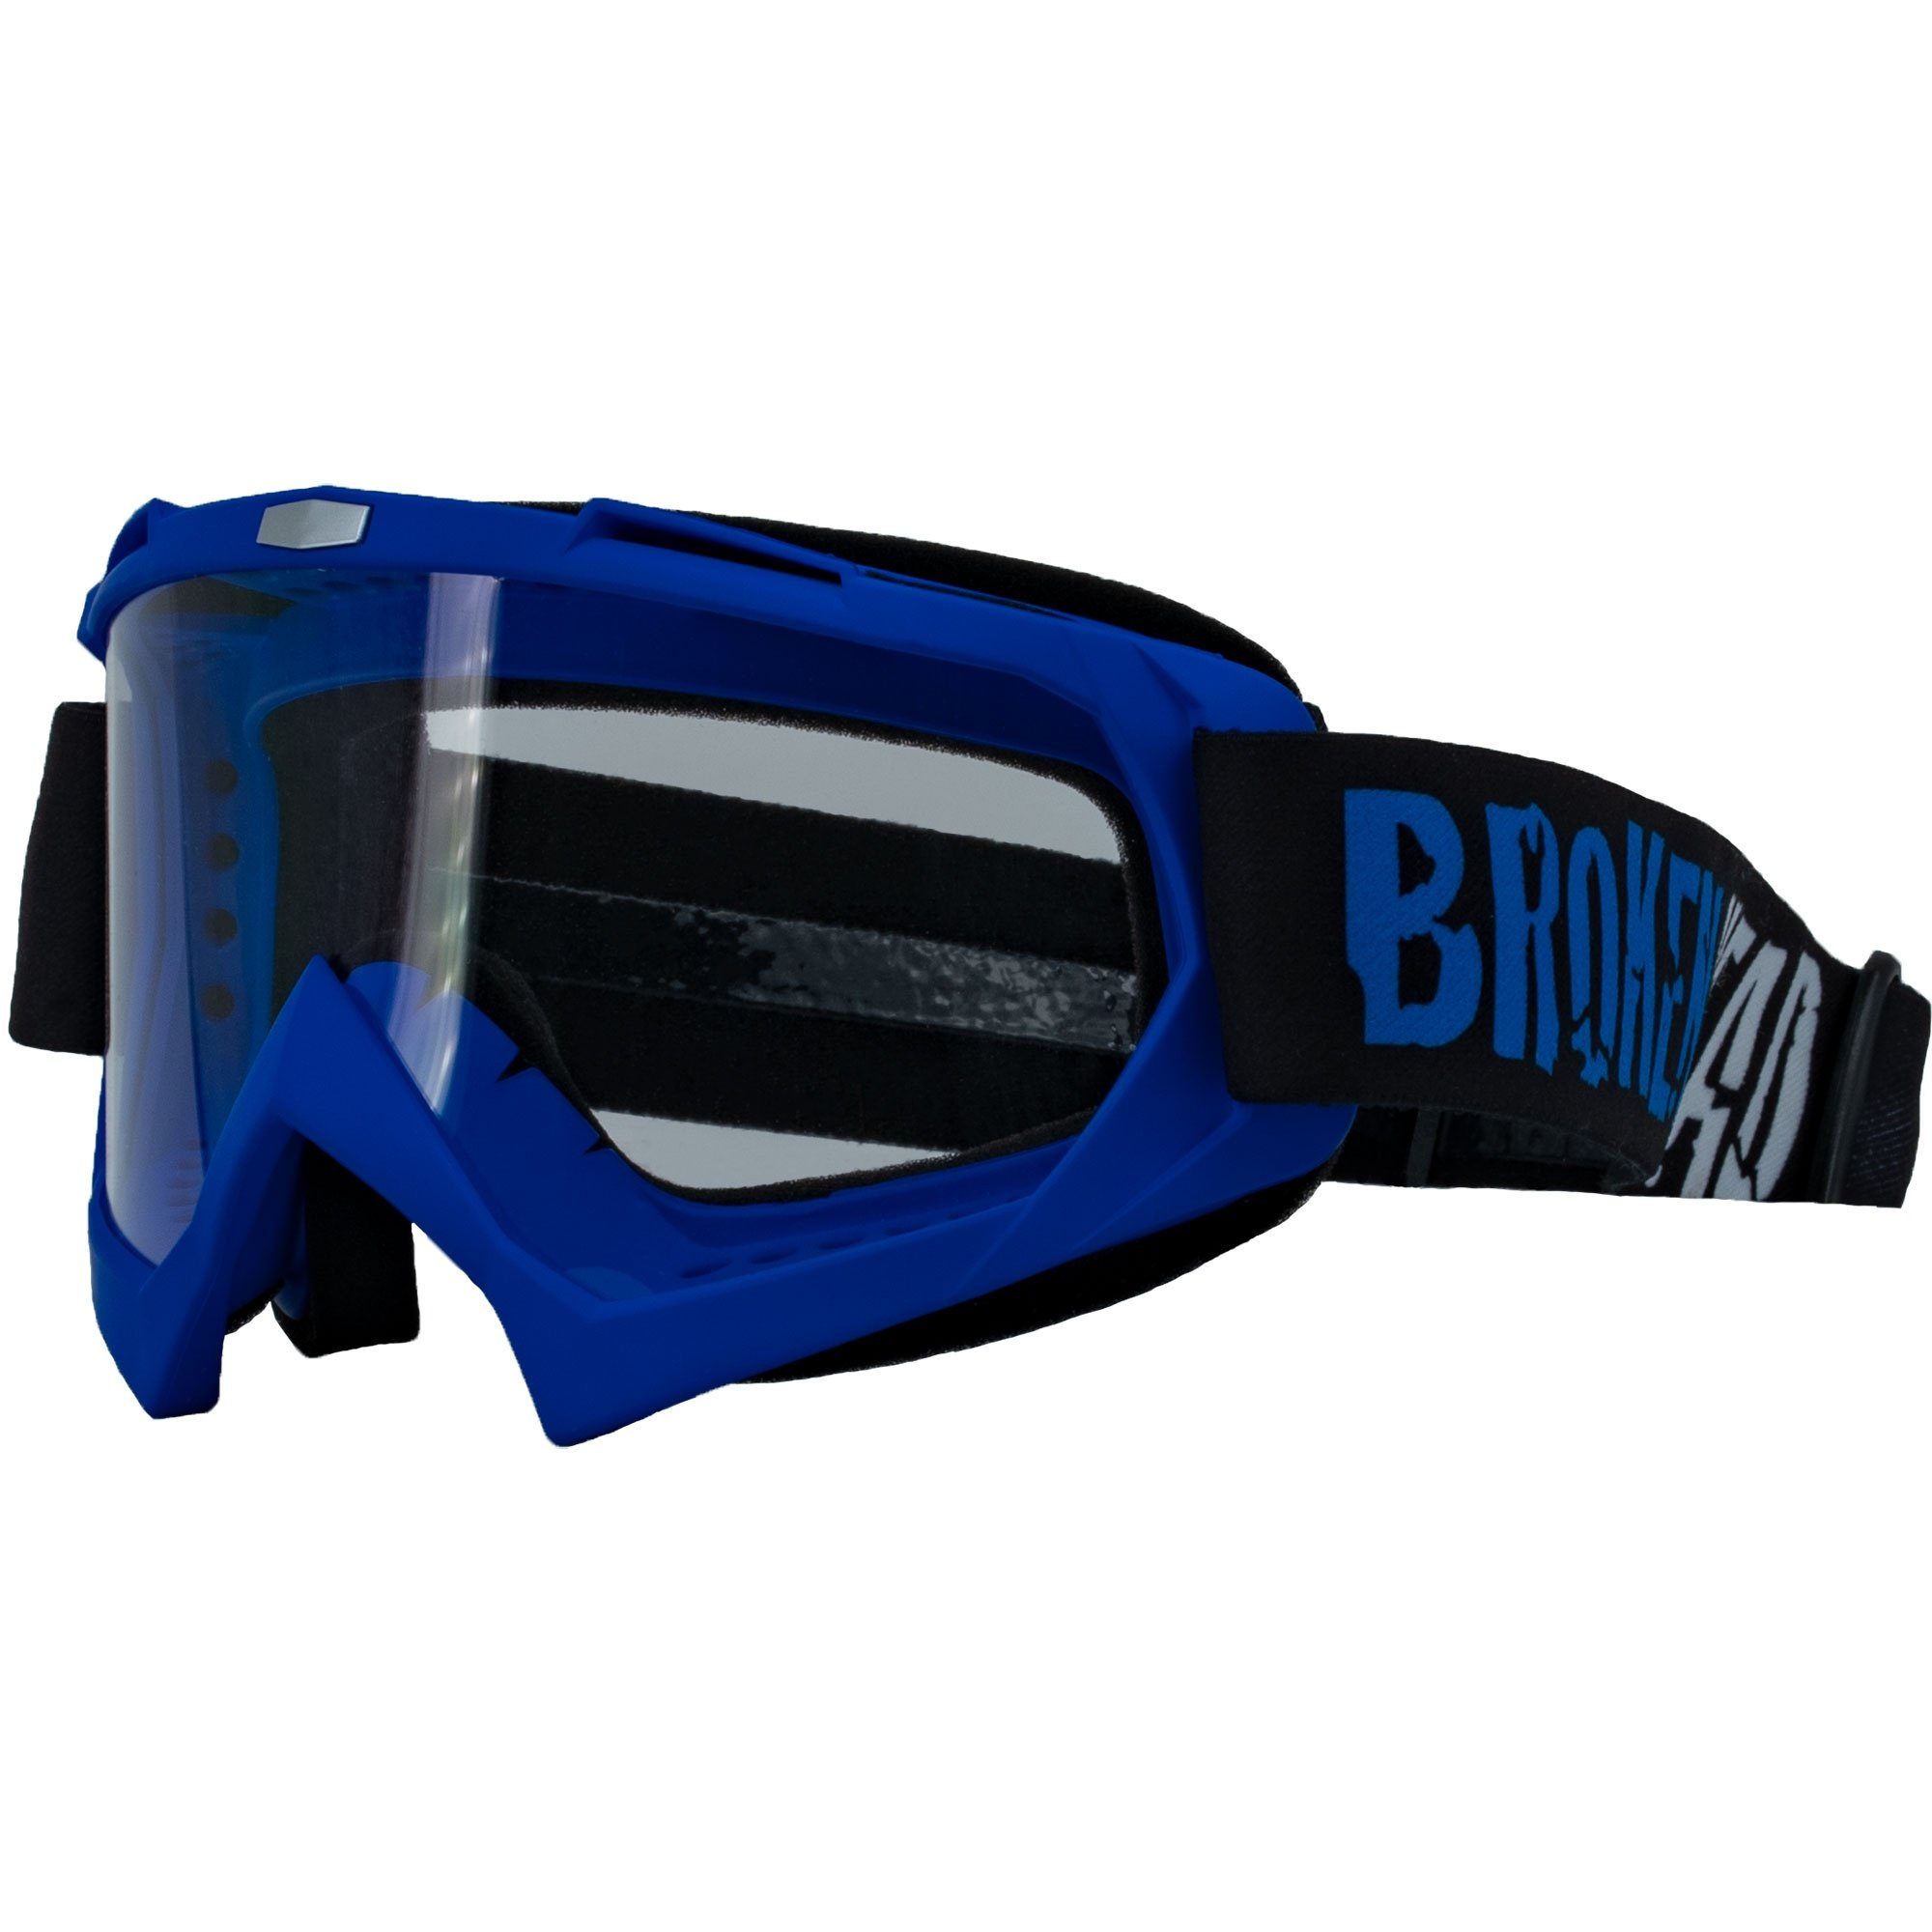 Damen Brillen Broken Head Motorradbrille Crossbrille MX-2 Goggle Blau, Vorrichtung für Abreißvisiere